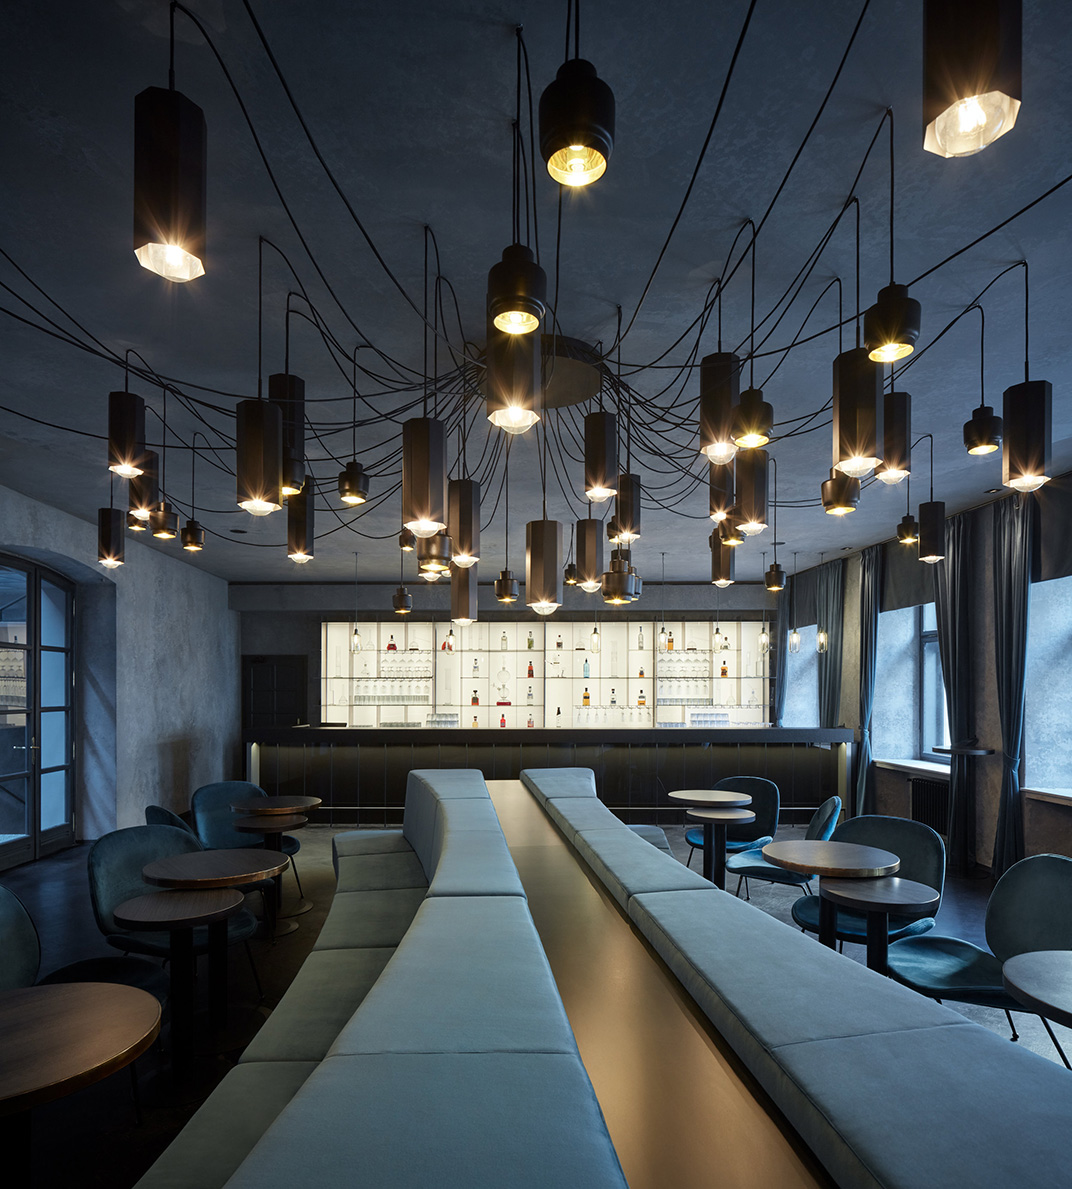 月球俱乐部夜店空间设计 视觉餐饮 全球餐饮研究所 vi设计 空间设计 深圳 杭州 武汉 上海 广州 北京